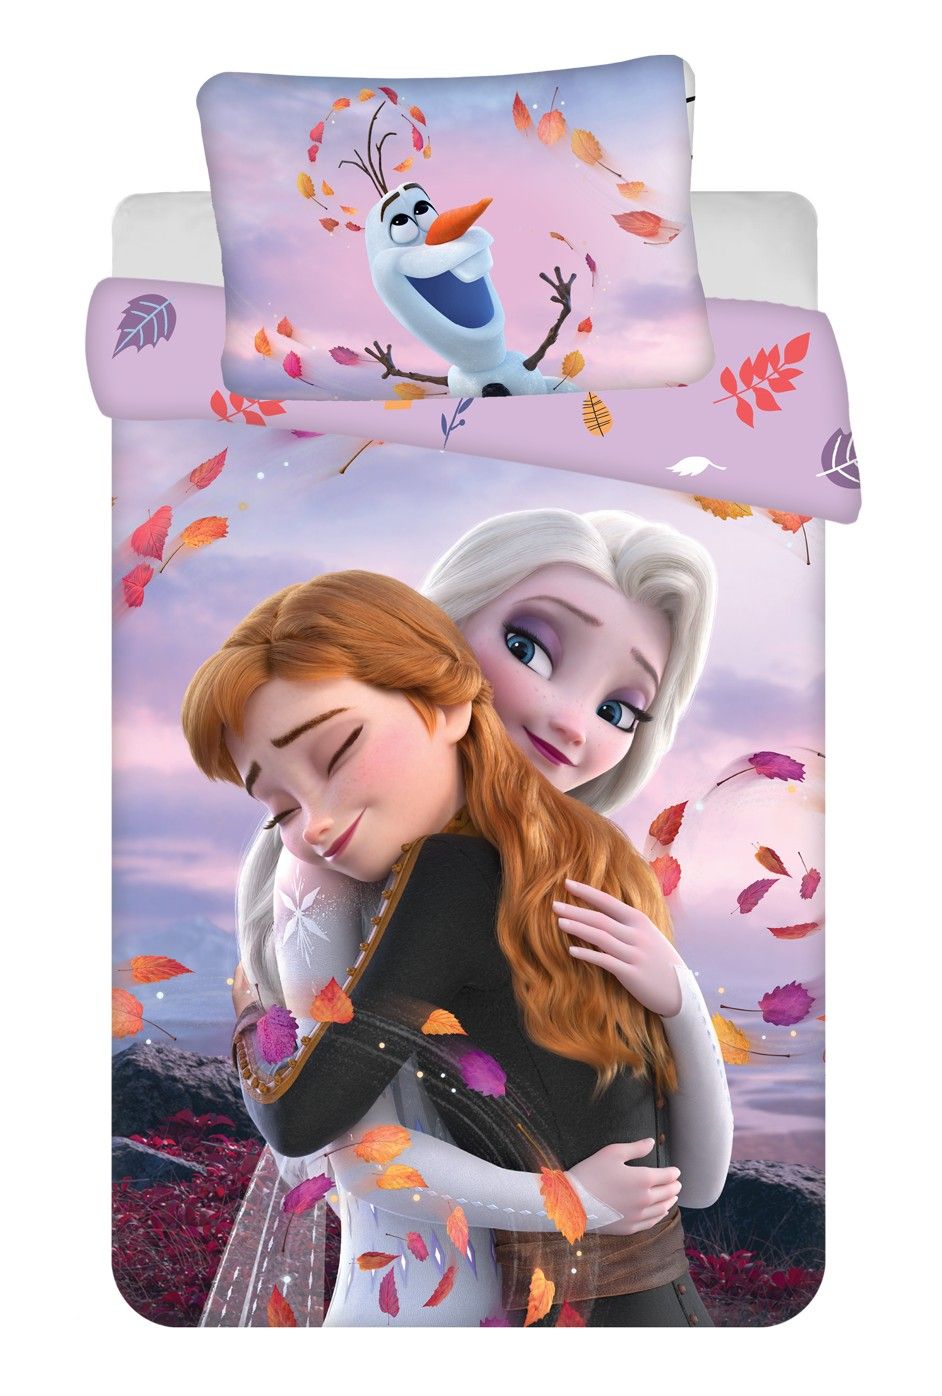 Disney povlečení do dětské postýlky Frozen 2 "Hug" baby, Jerry Fabrics